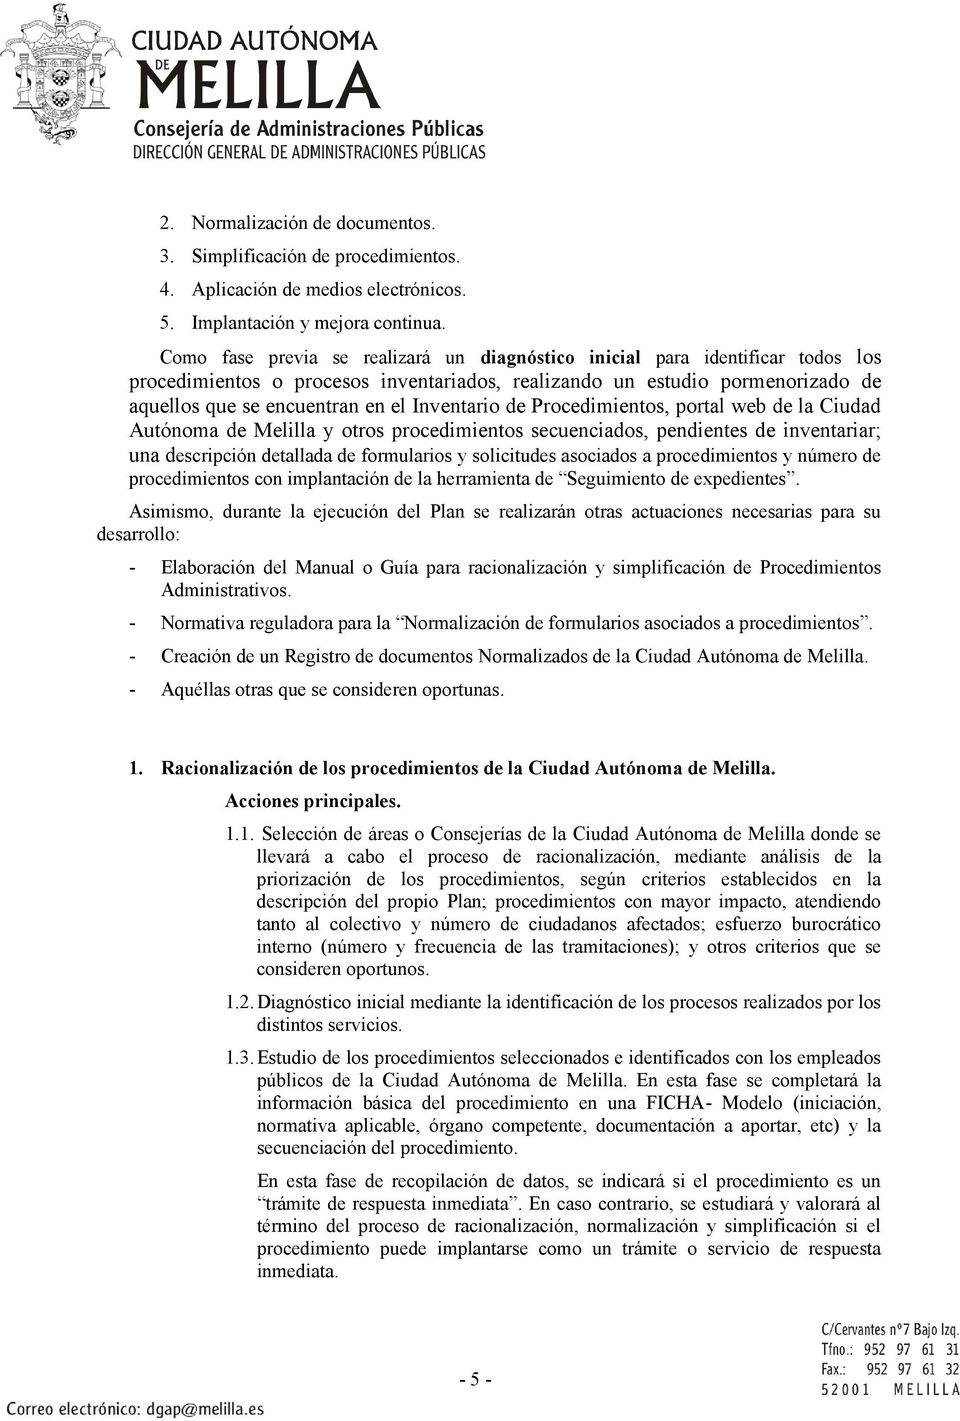 Inventario de Procedimientos, portal web de la Ciudad Autónoma de Melilla y otros procedimientos secuenciados, pendientes de inventariar; una descripción detallada de formularios y solicitudes